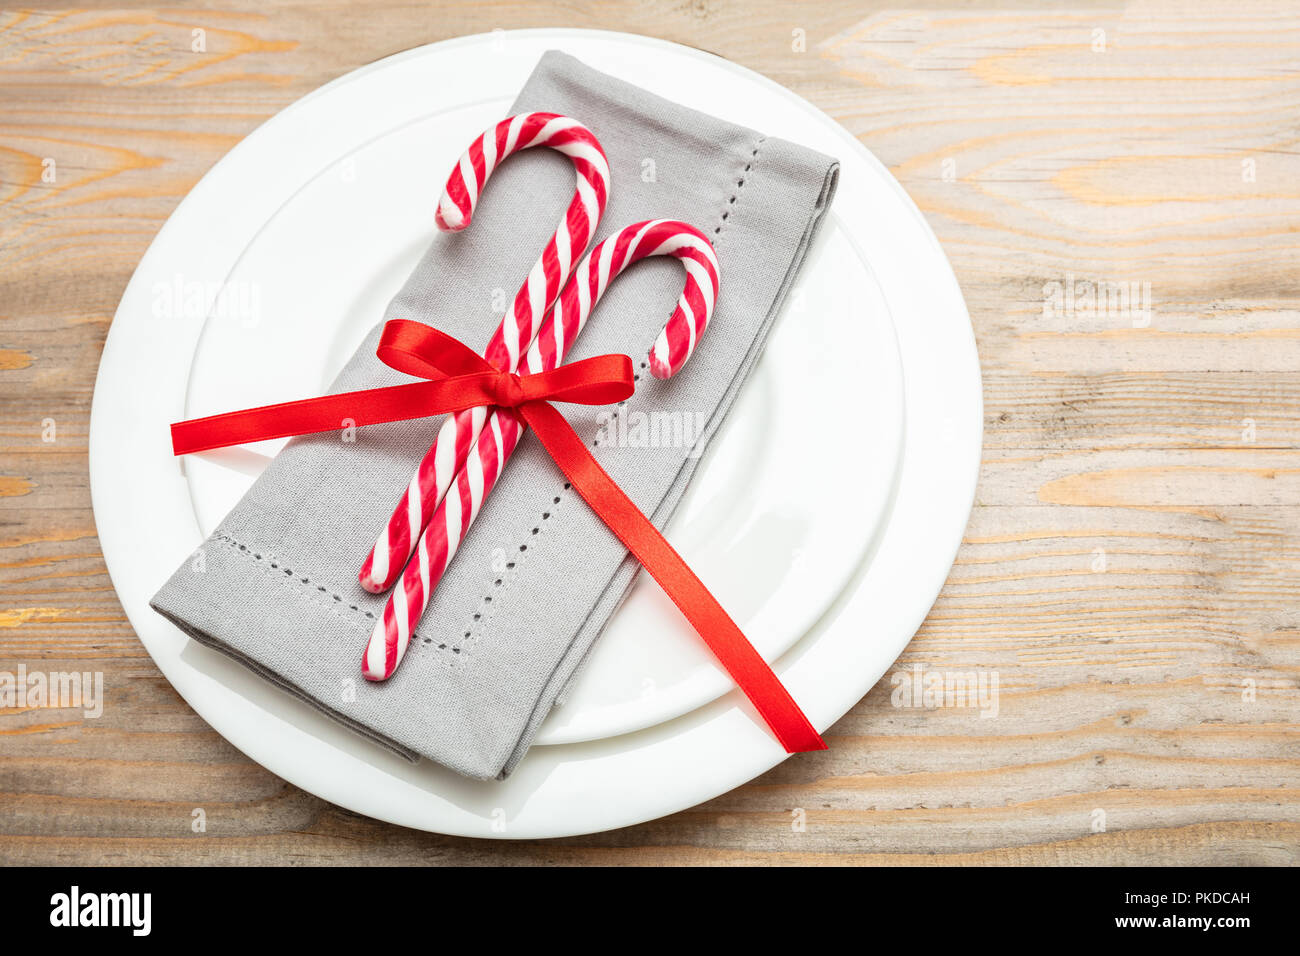 Weihnachten Tabelle einstellen. Zuckerstangen und eine graue Serviette auf weiße Platten, Holz- Hintergrund Stockfoto